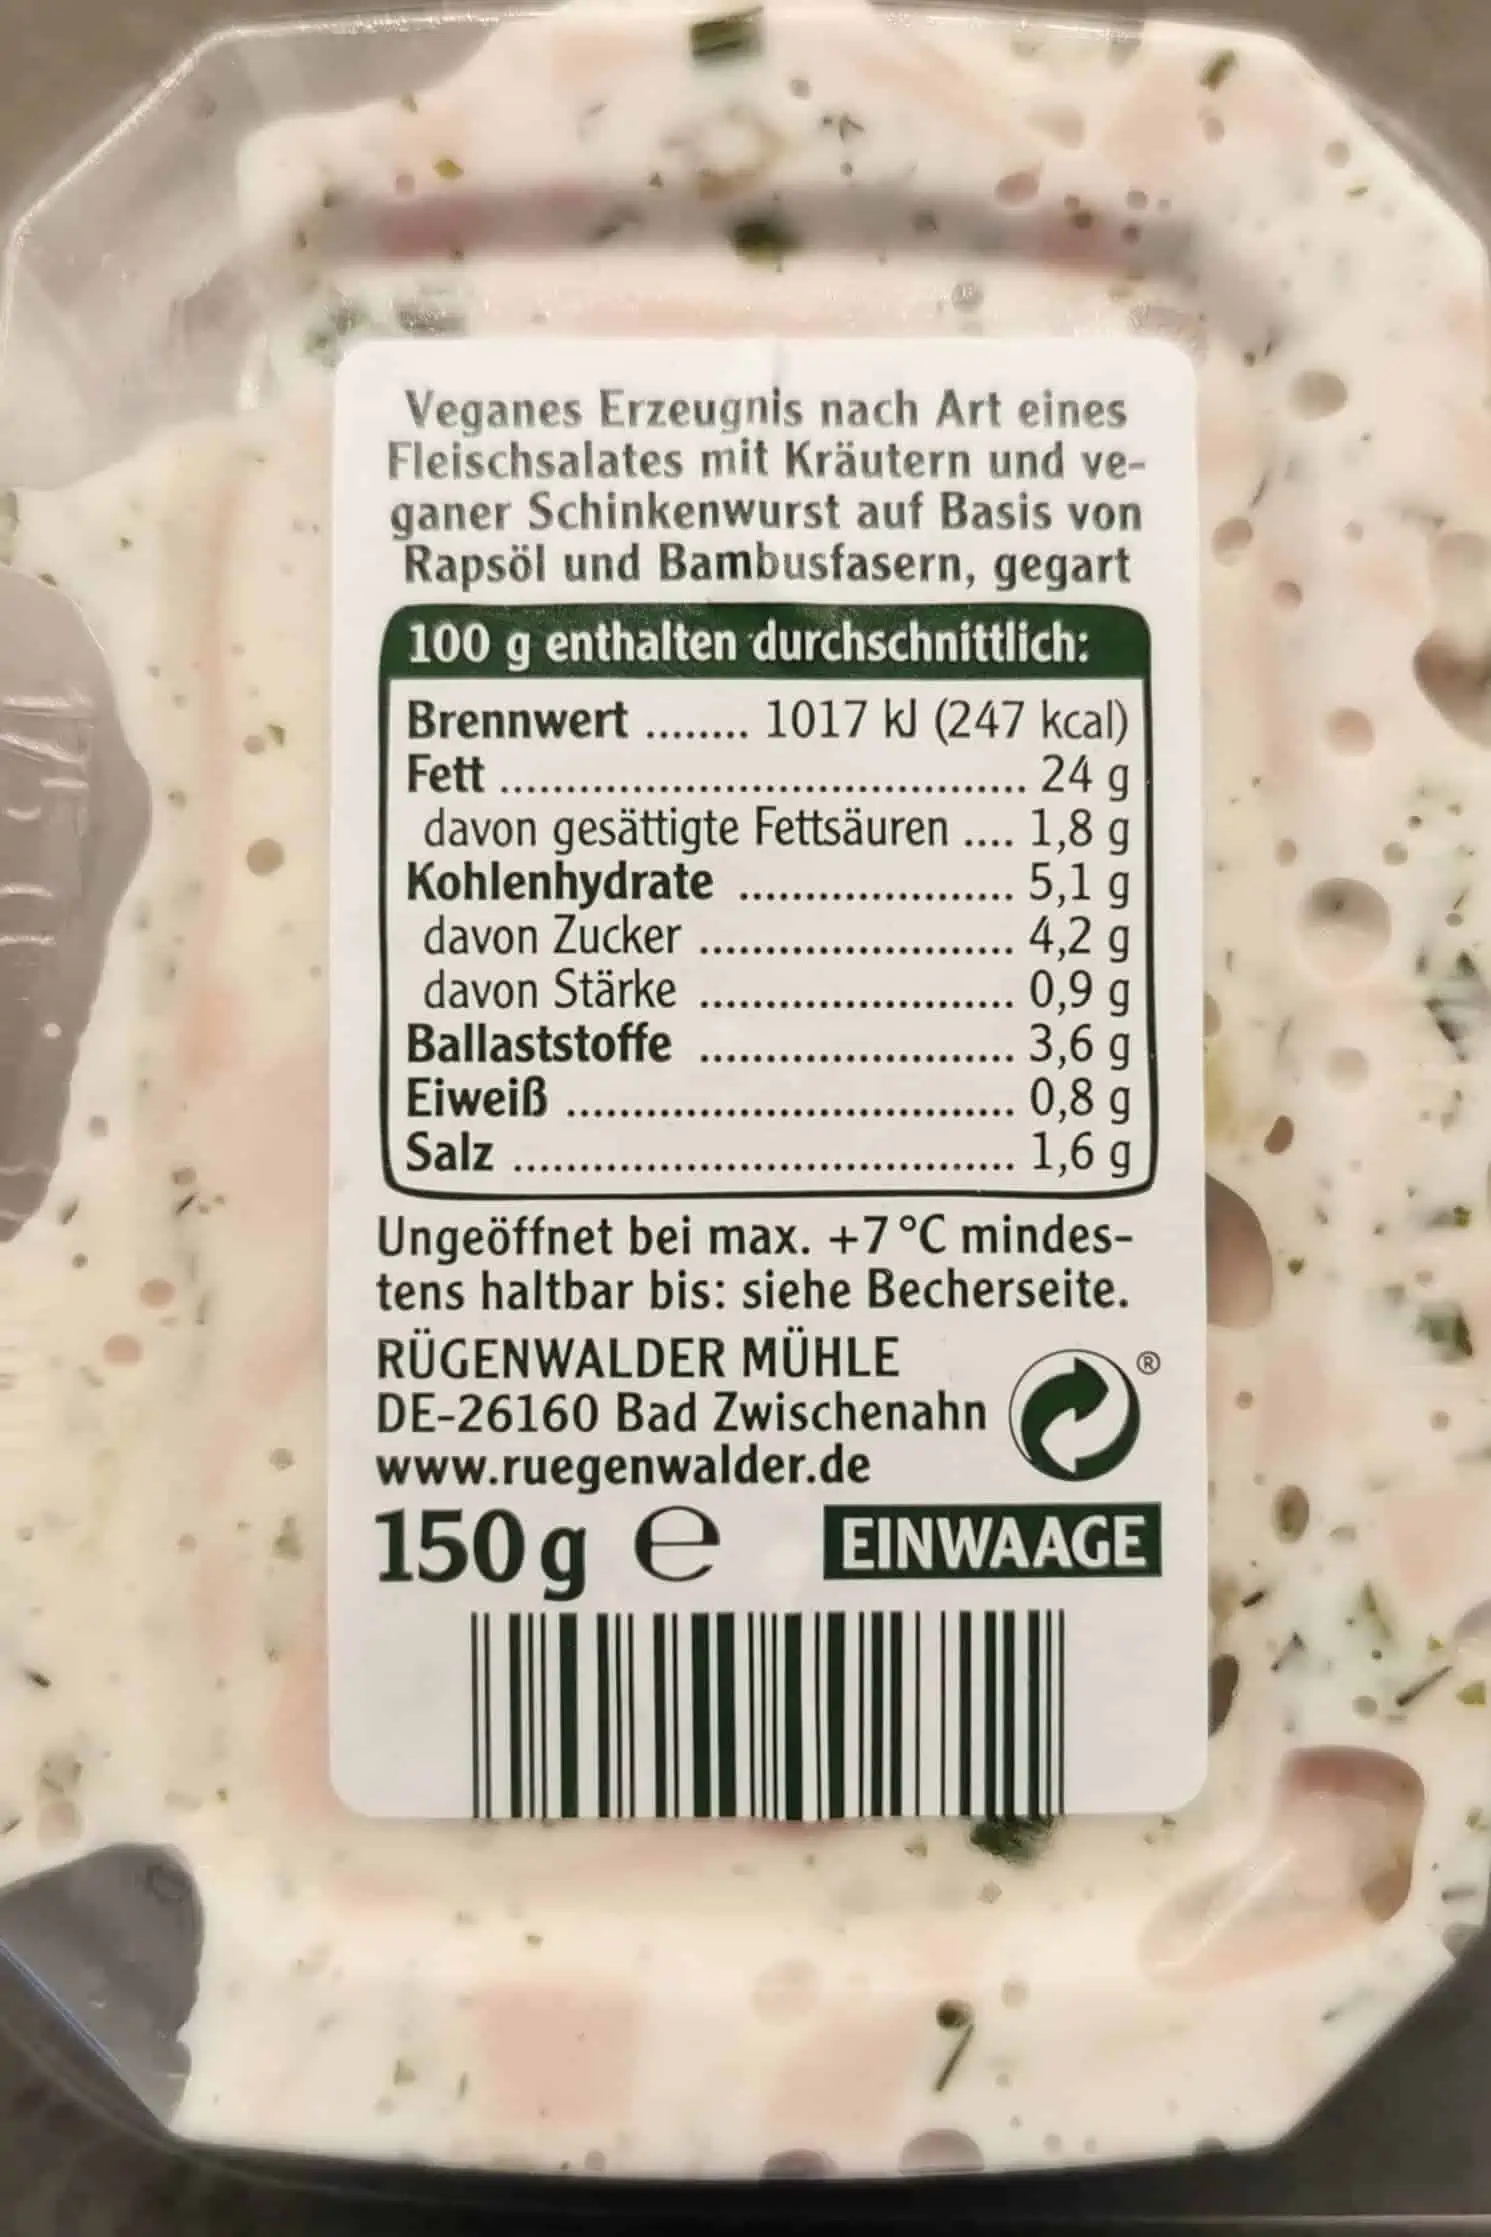 Rügenwalder Mühle: Veganer Schinken Spicker Salat Kräuter Zutaten und Nährwerte